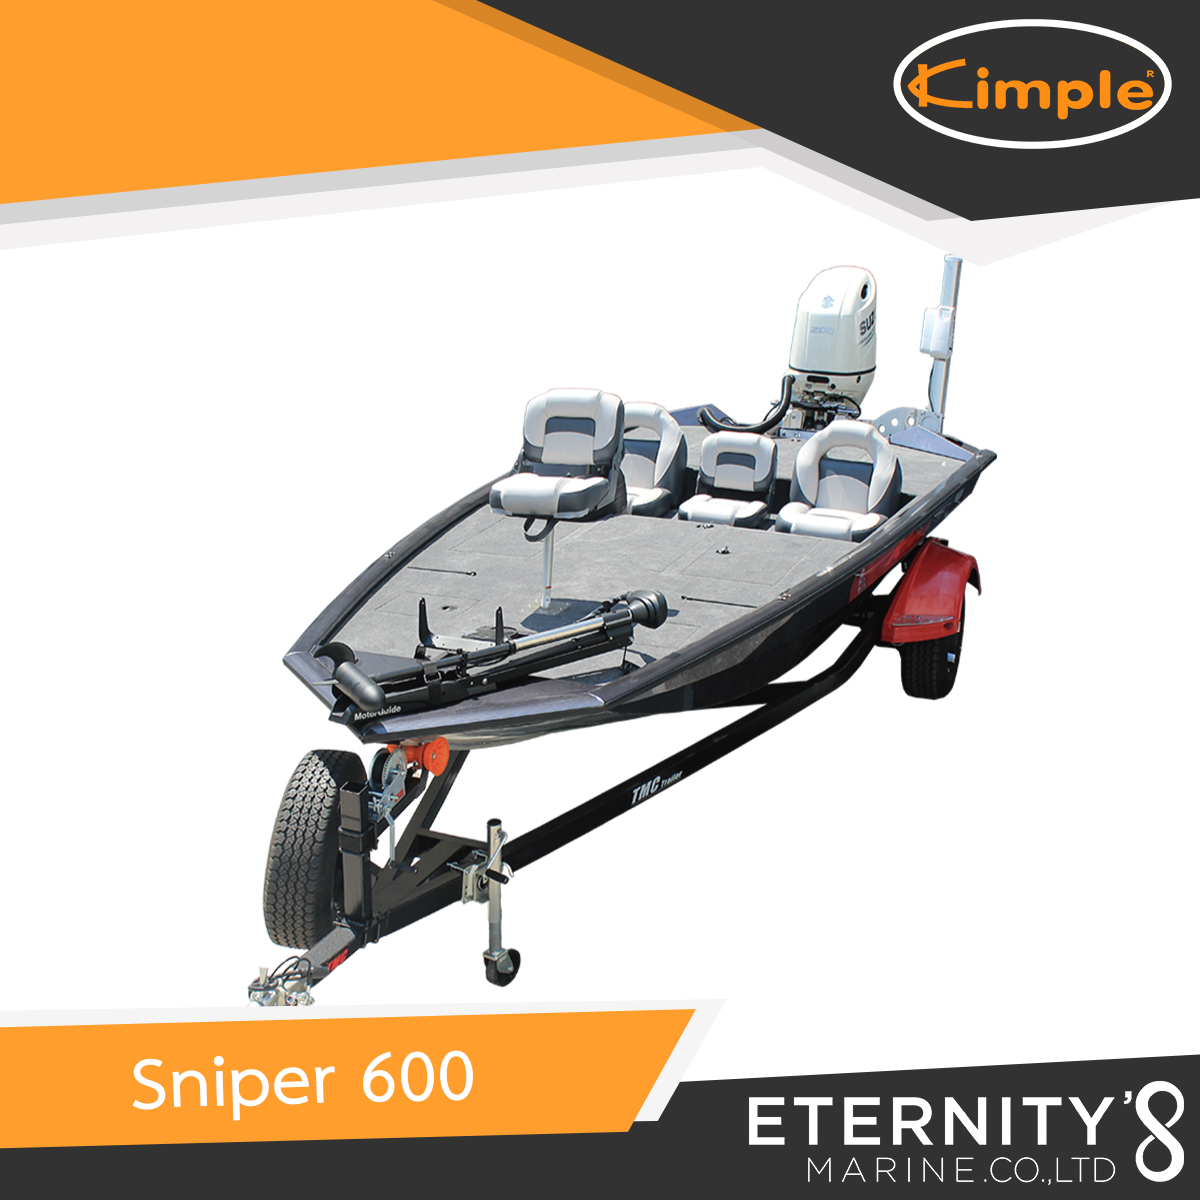 Kimple Sniper 600